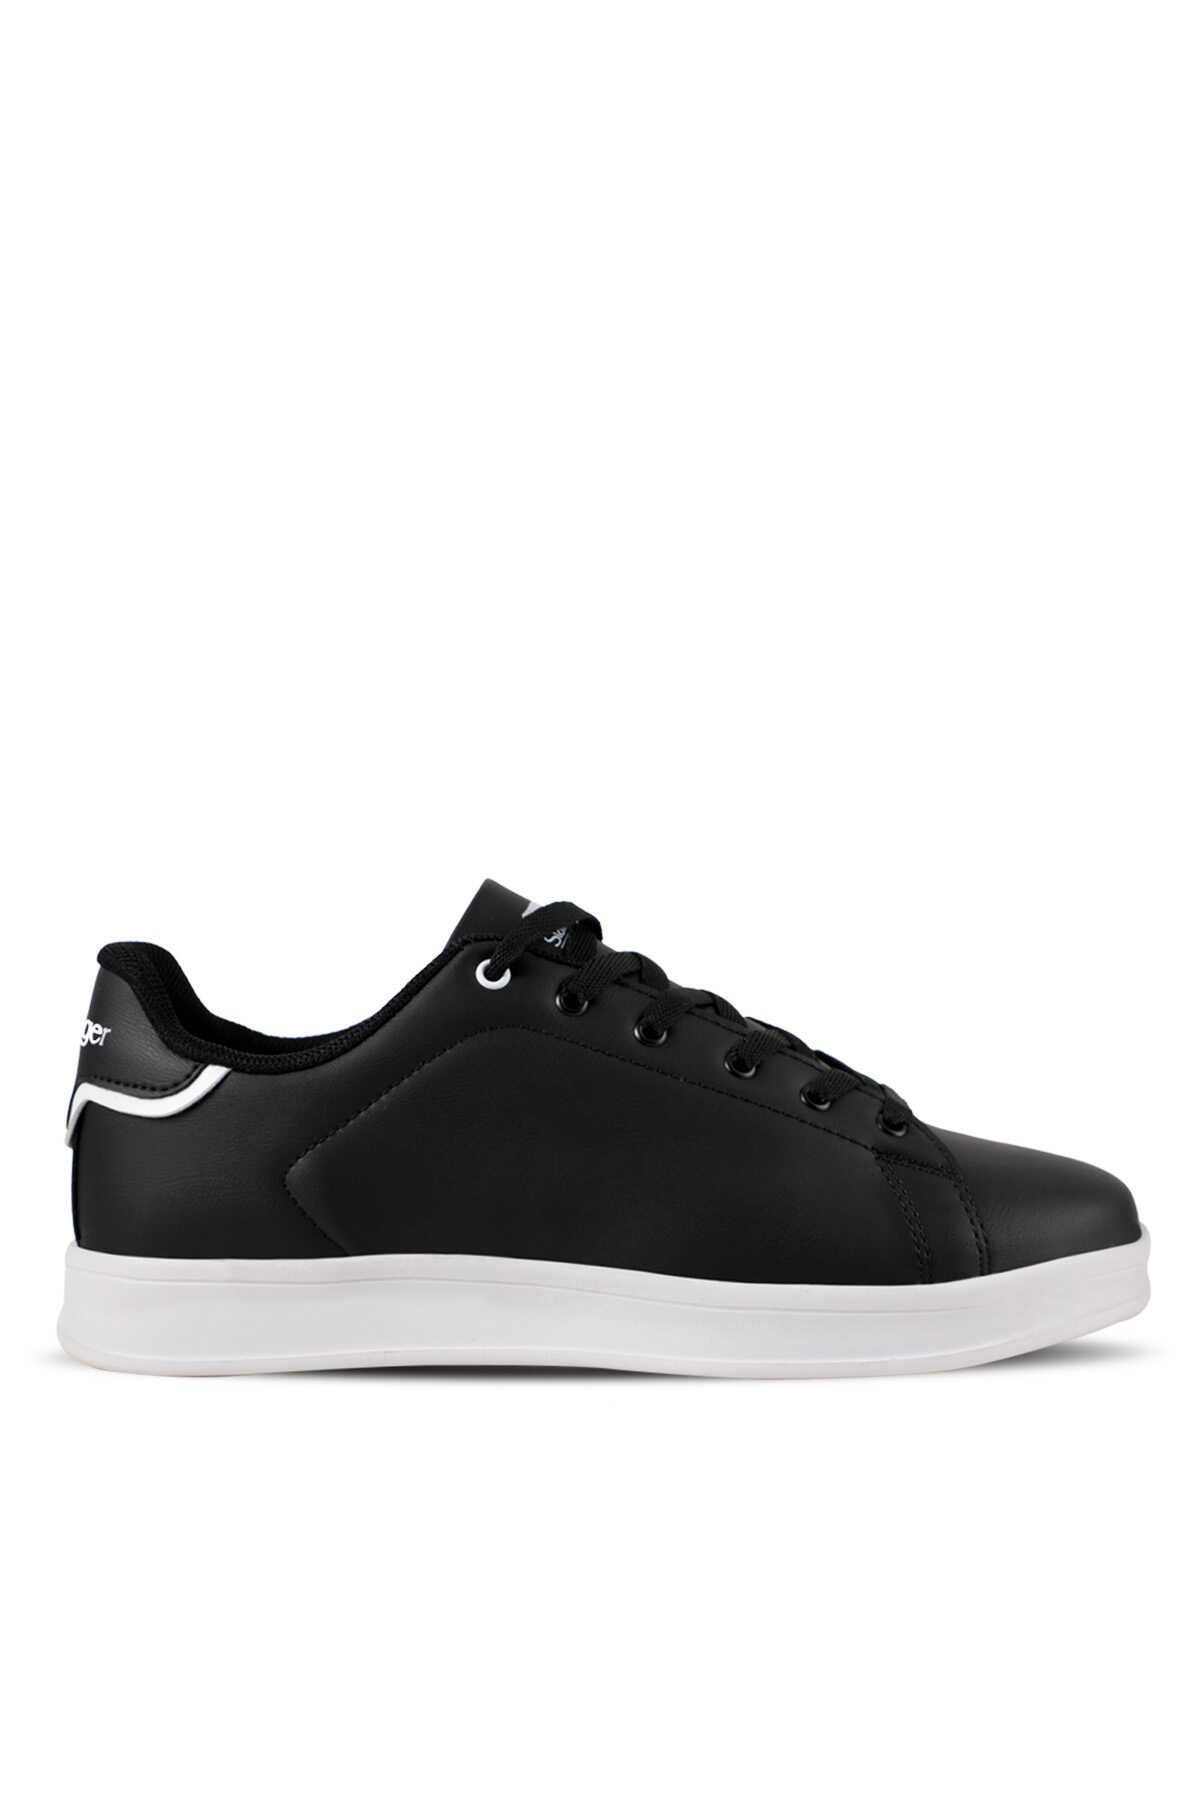 Slazenger - Slazenger ORFEX H Sneaker Erkek Ayakkabı Siyah / Beyaz